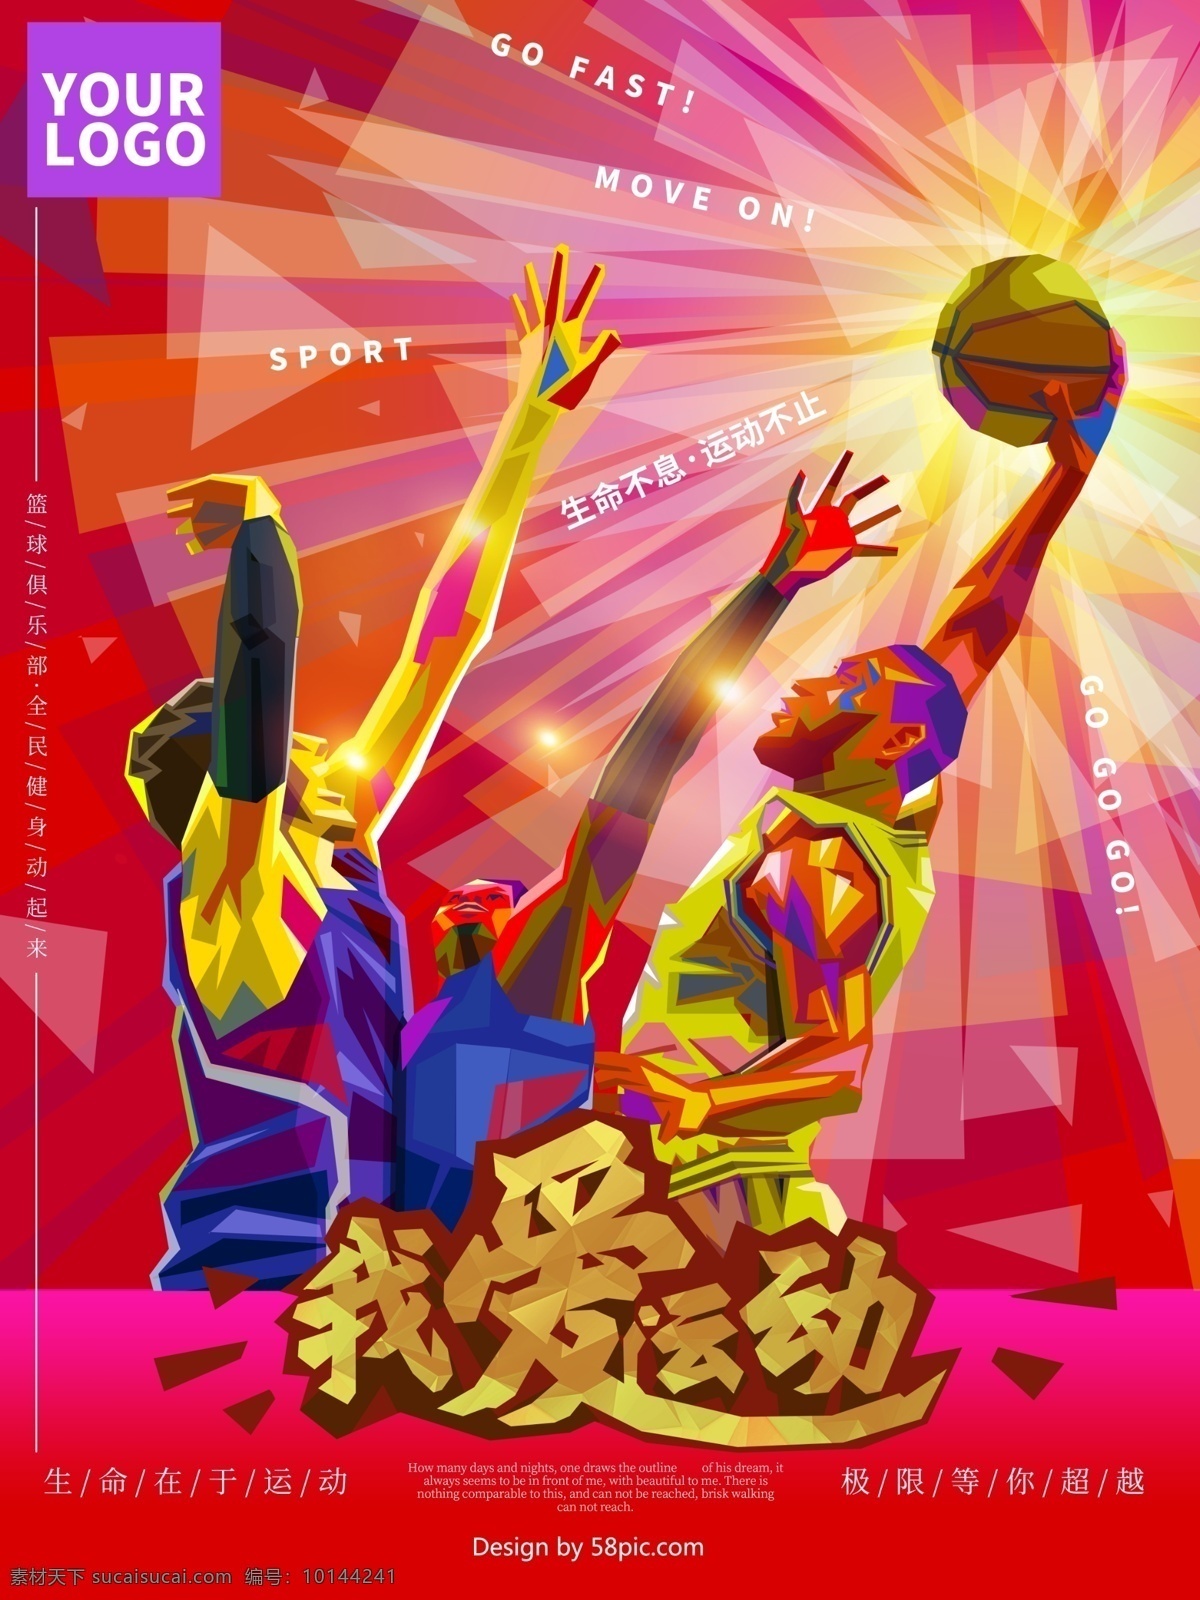 原创 手绘 运动 健身 篮球 海报 篮球海报 篮球训练 篮球赛 篮球训练营 篮球运动 篮球展板 篮球对抗赛 蓝球俱乐部 篮球社 篮球运动会 校园篮球 街头篮球 动感运动 动感篮球 对抗 胜利 手绘运动